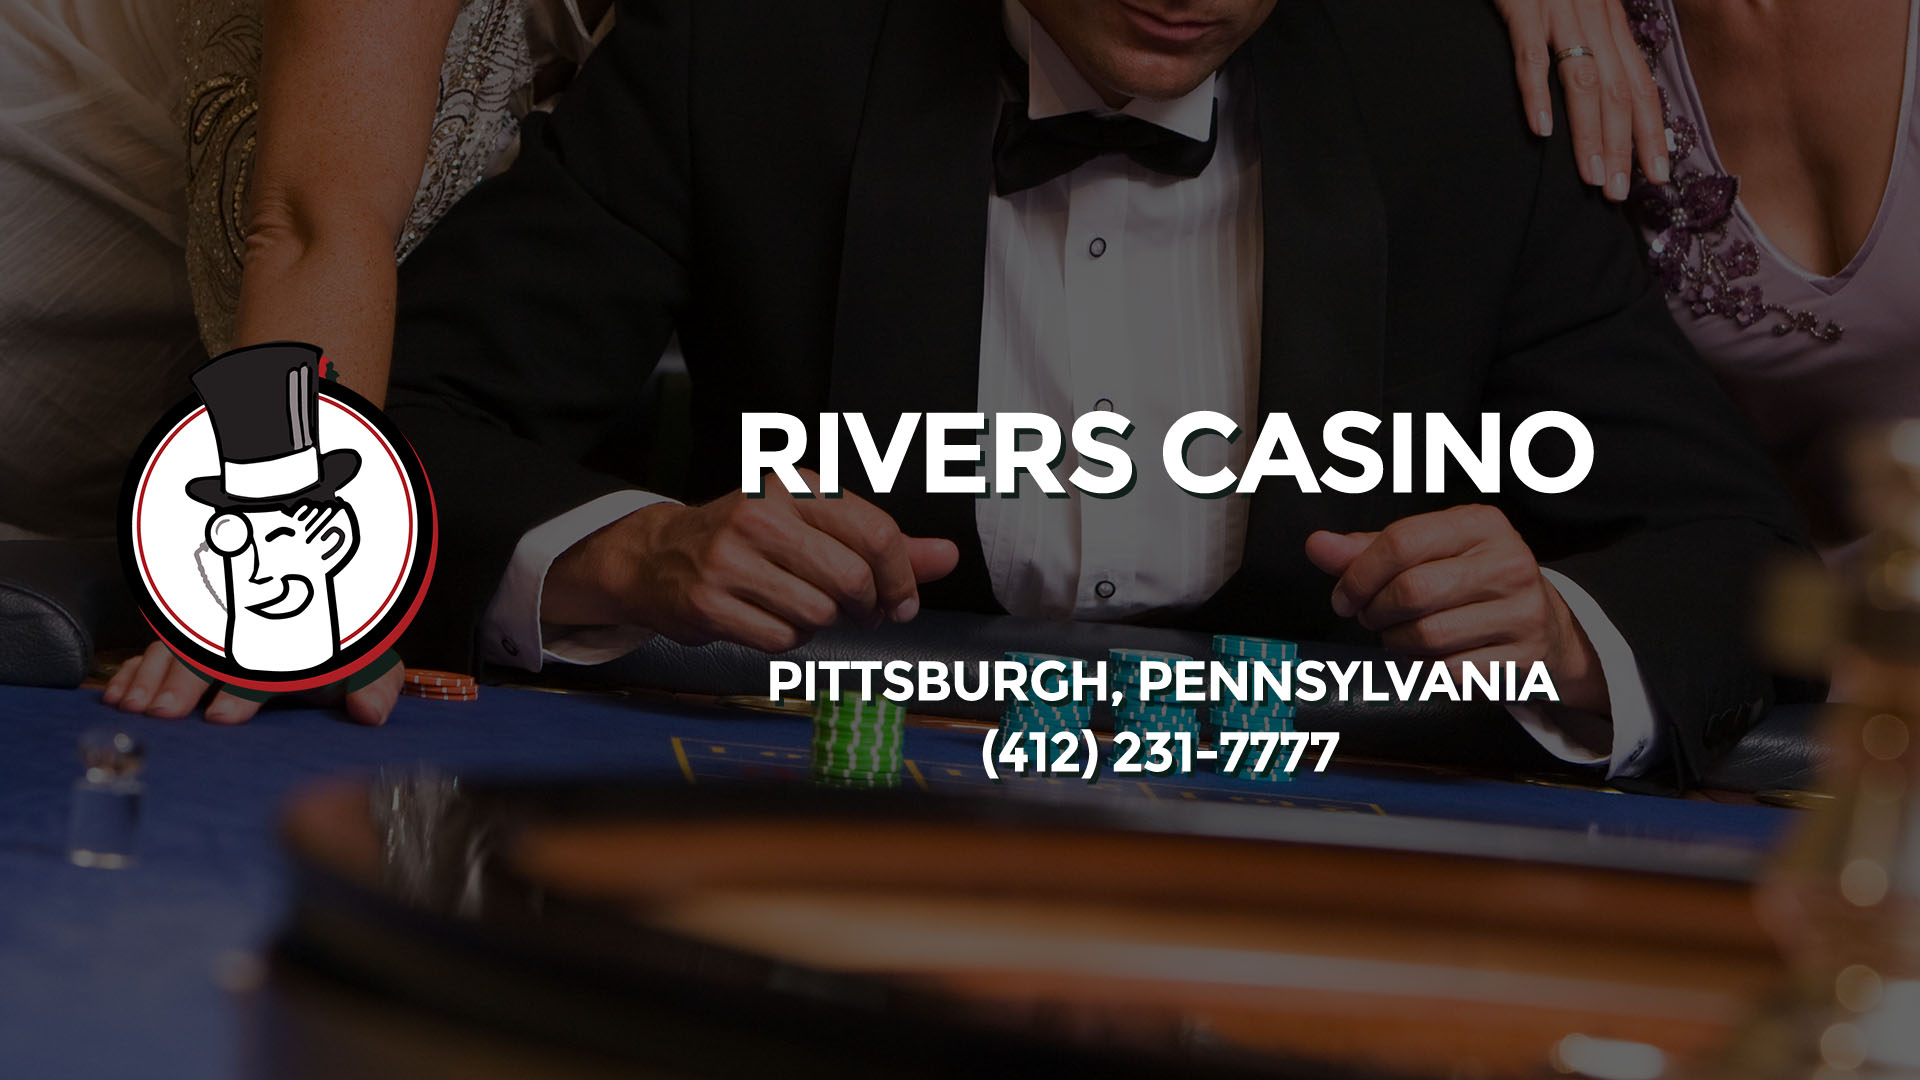 rivers casino jobs pittsburgh